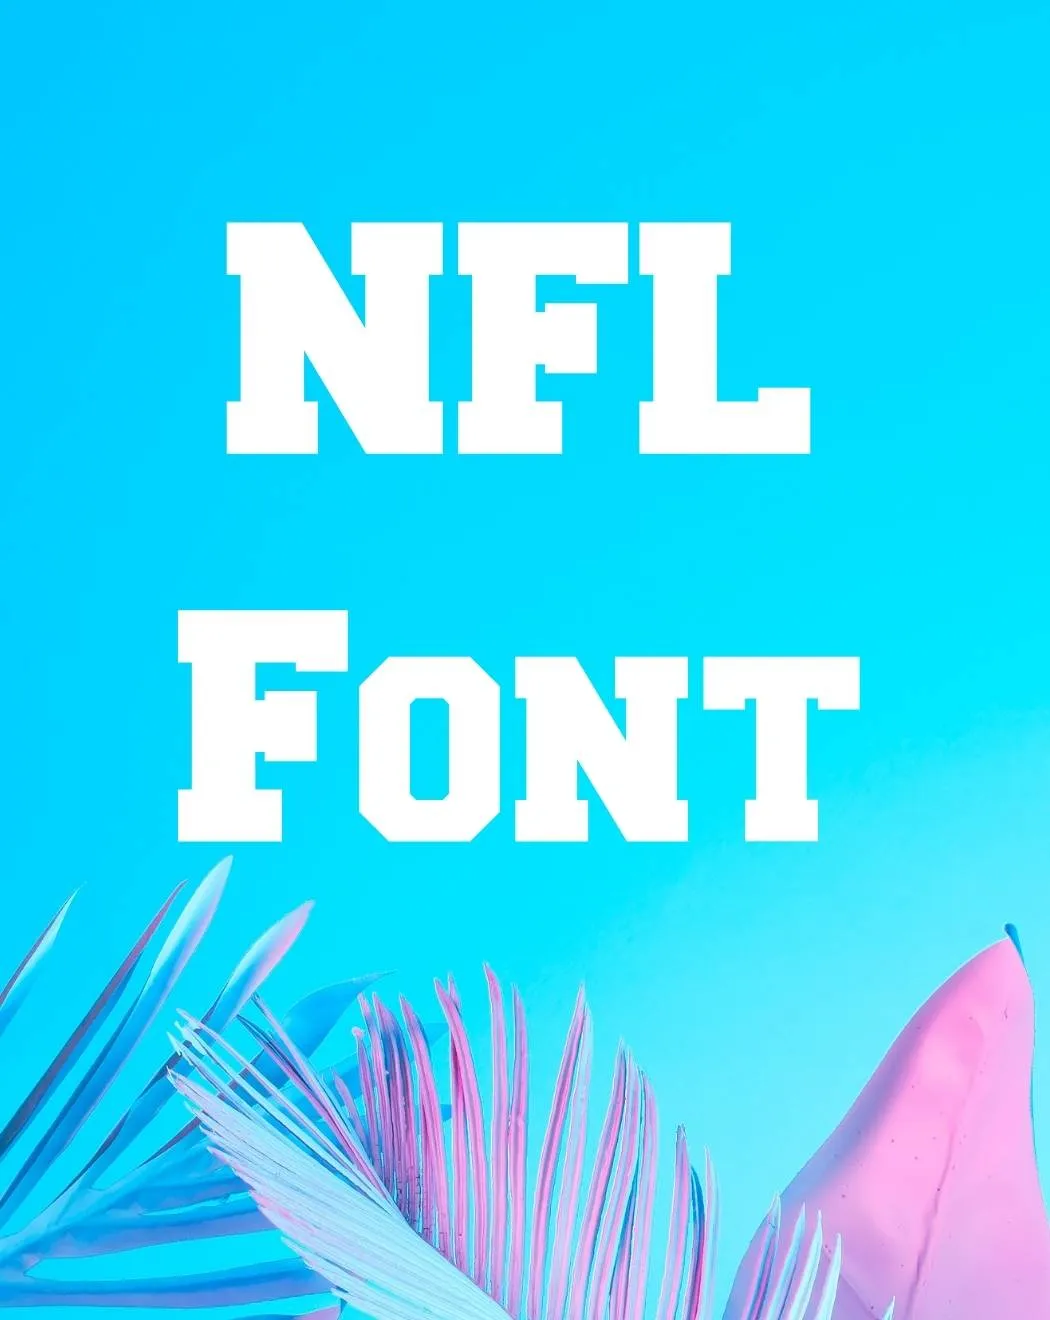 NFL Font Free Download